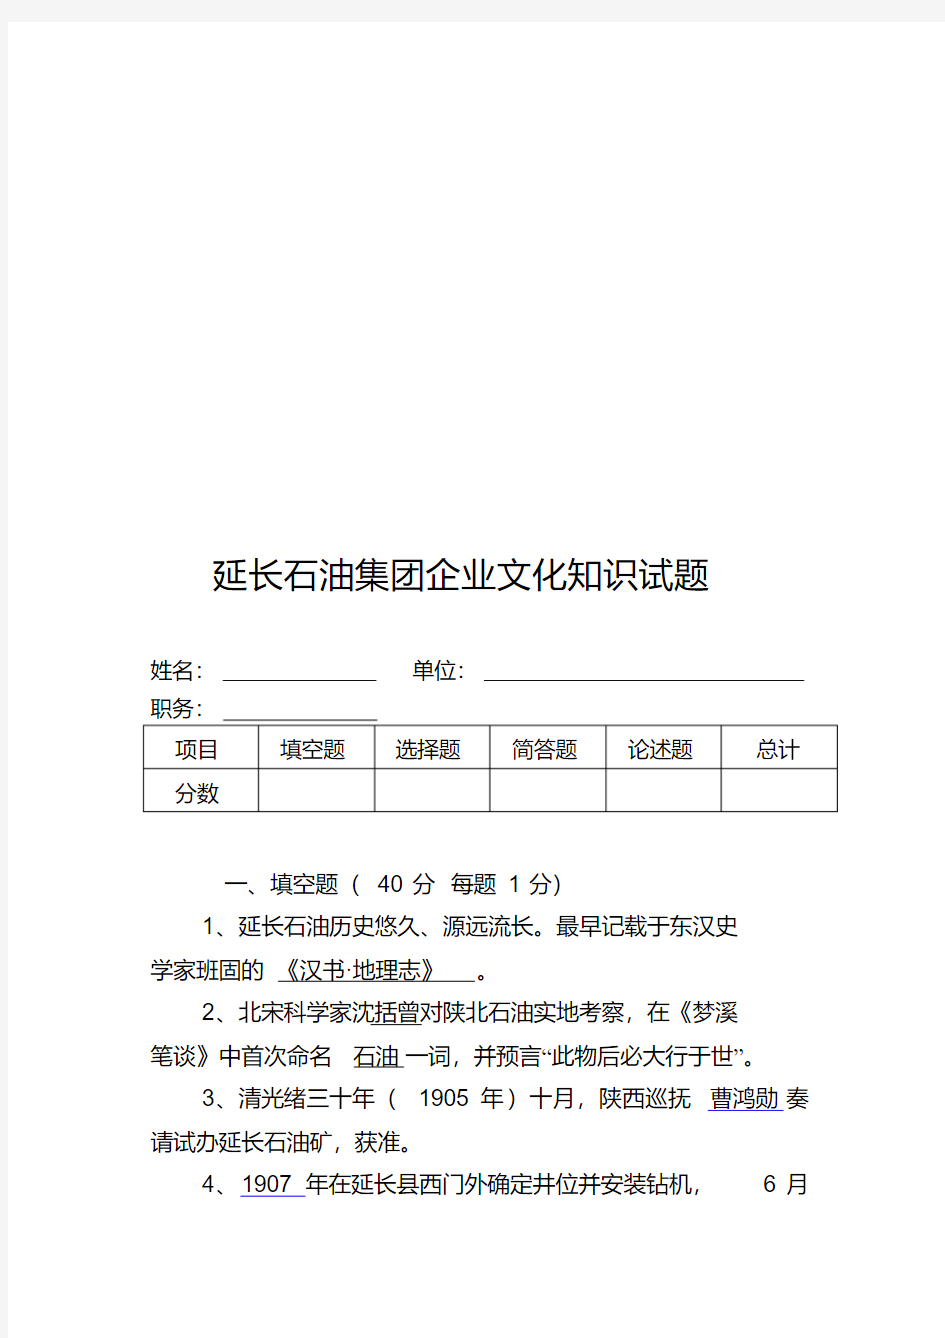 延长石油区集团企业文化知识试题(带答案)-精选.pdf